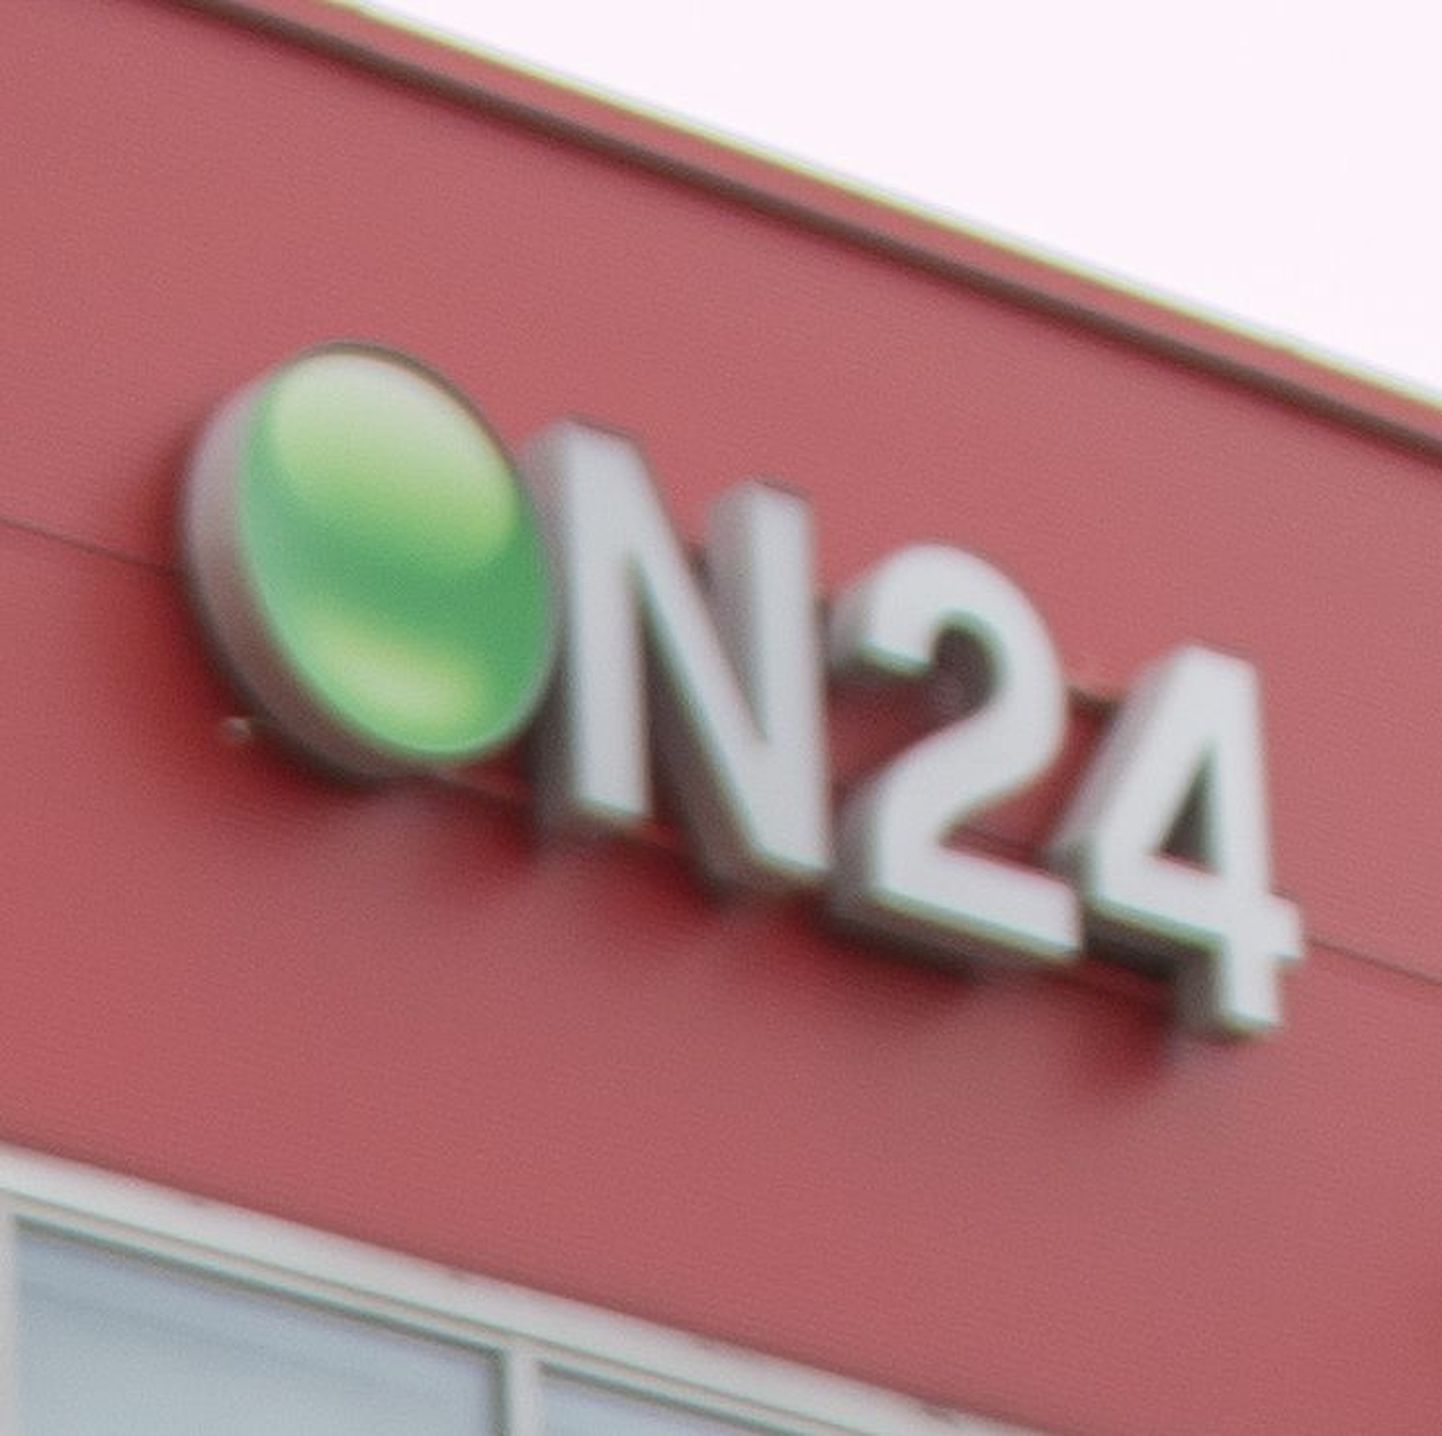 Viljandi päritolu internetikaubamaja ON24 on tõusnud Eesti suurimaks mööblimüüjaks.